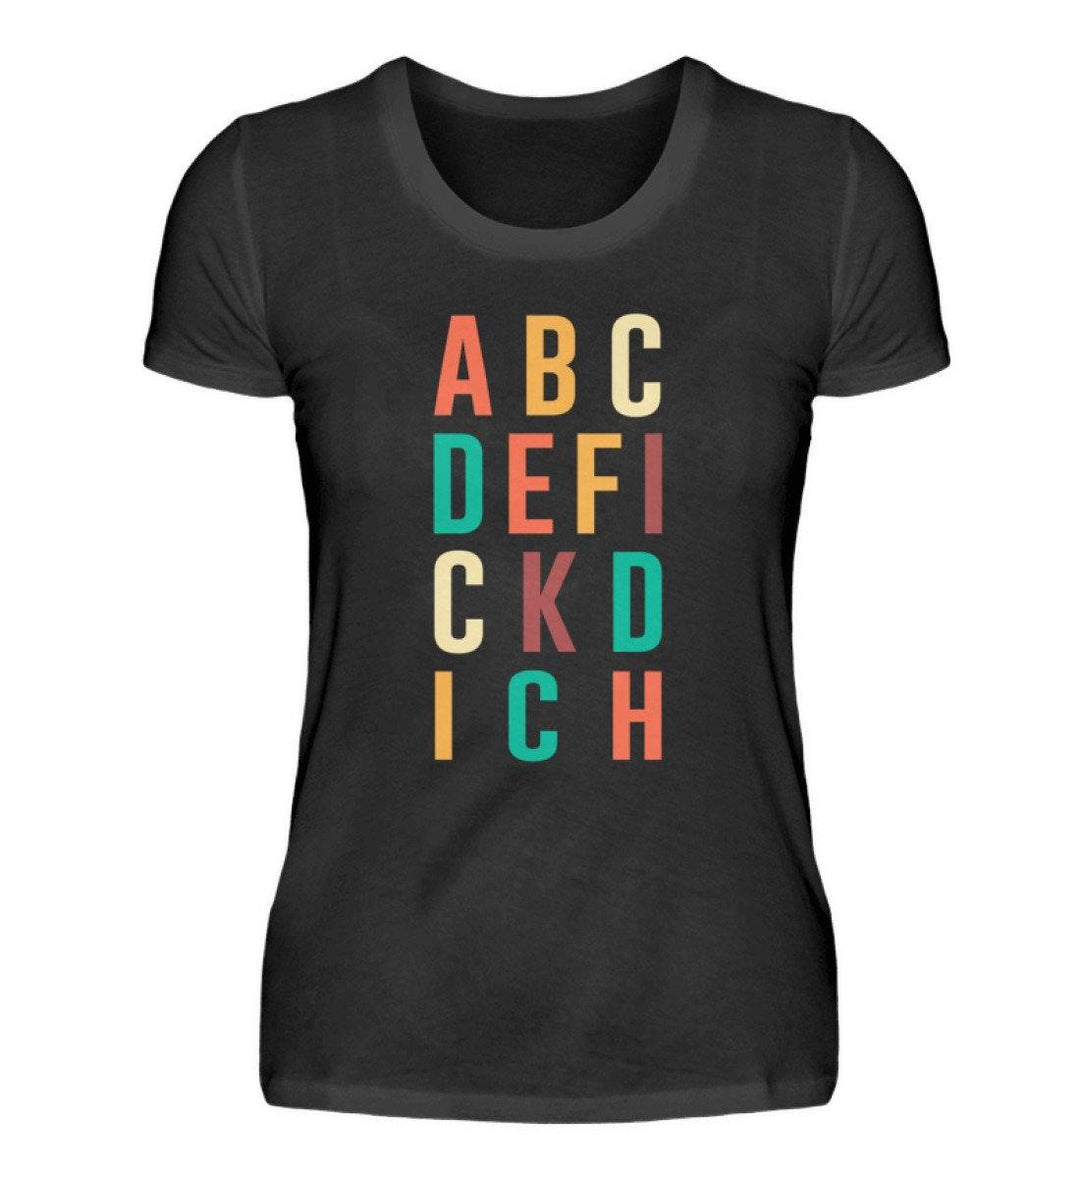 ABCDEFICKDICH - Words on Shirts  - Damenshirt - Words on Shirts Sag es mit dem Mittelfinger Shirts Hoodies Sweatshirt Taschen Gymsack Spruch Sprüche Statement